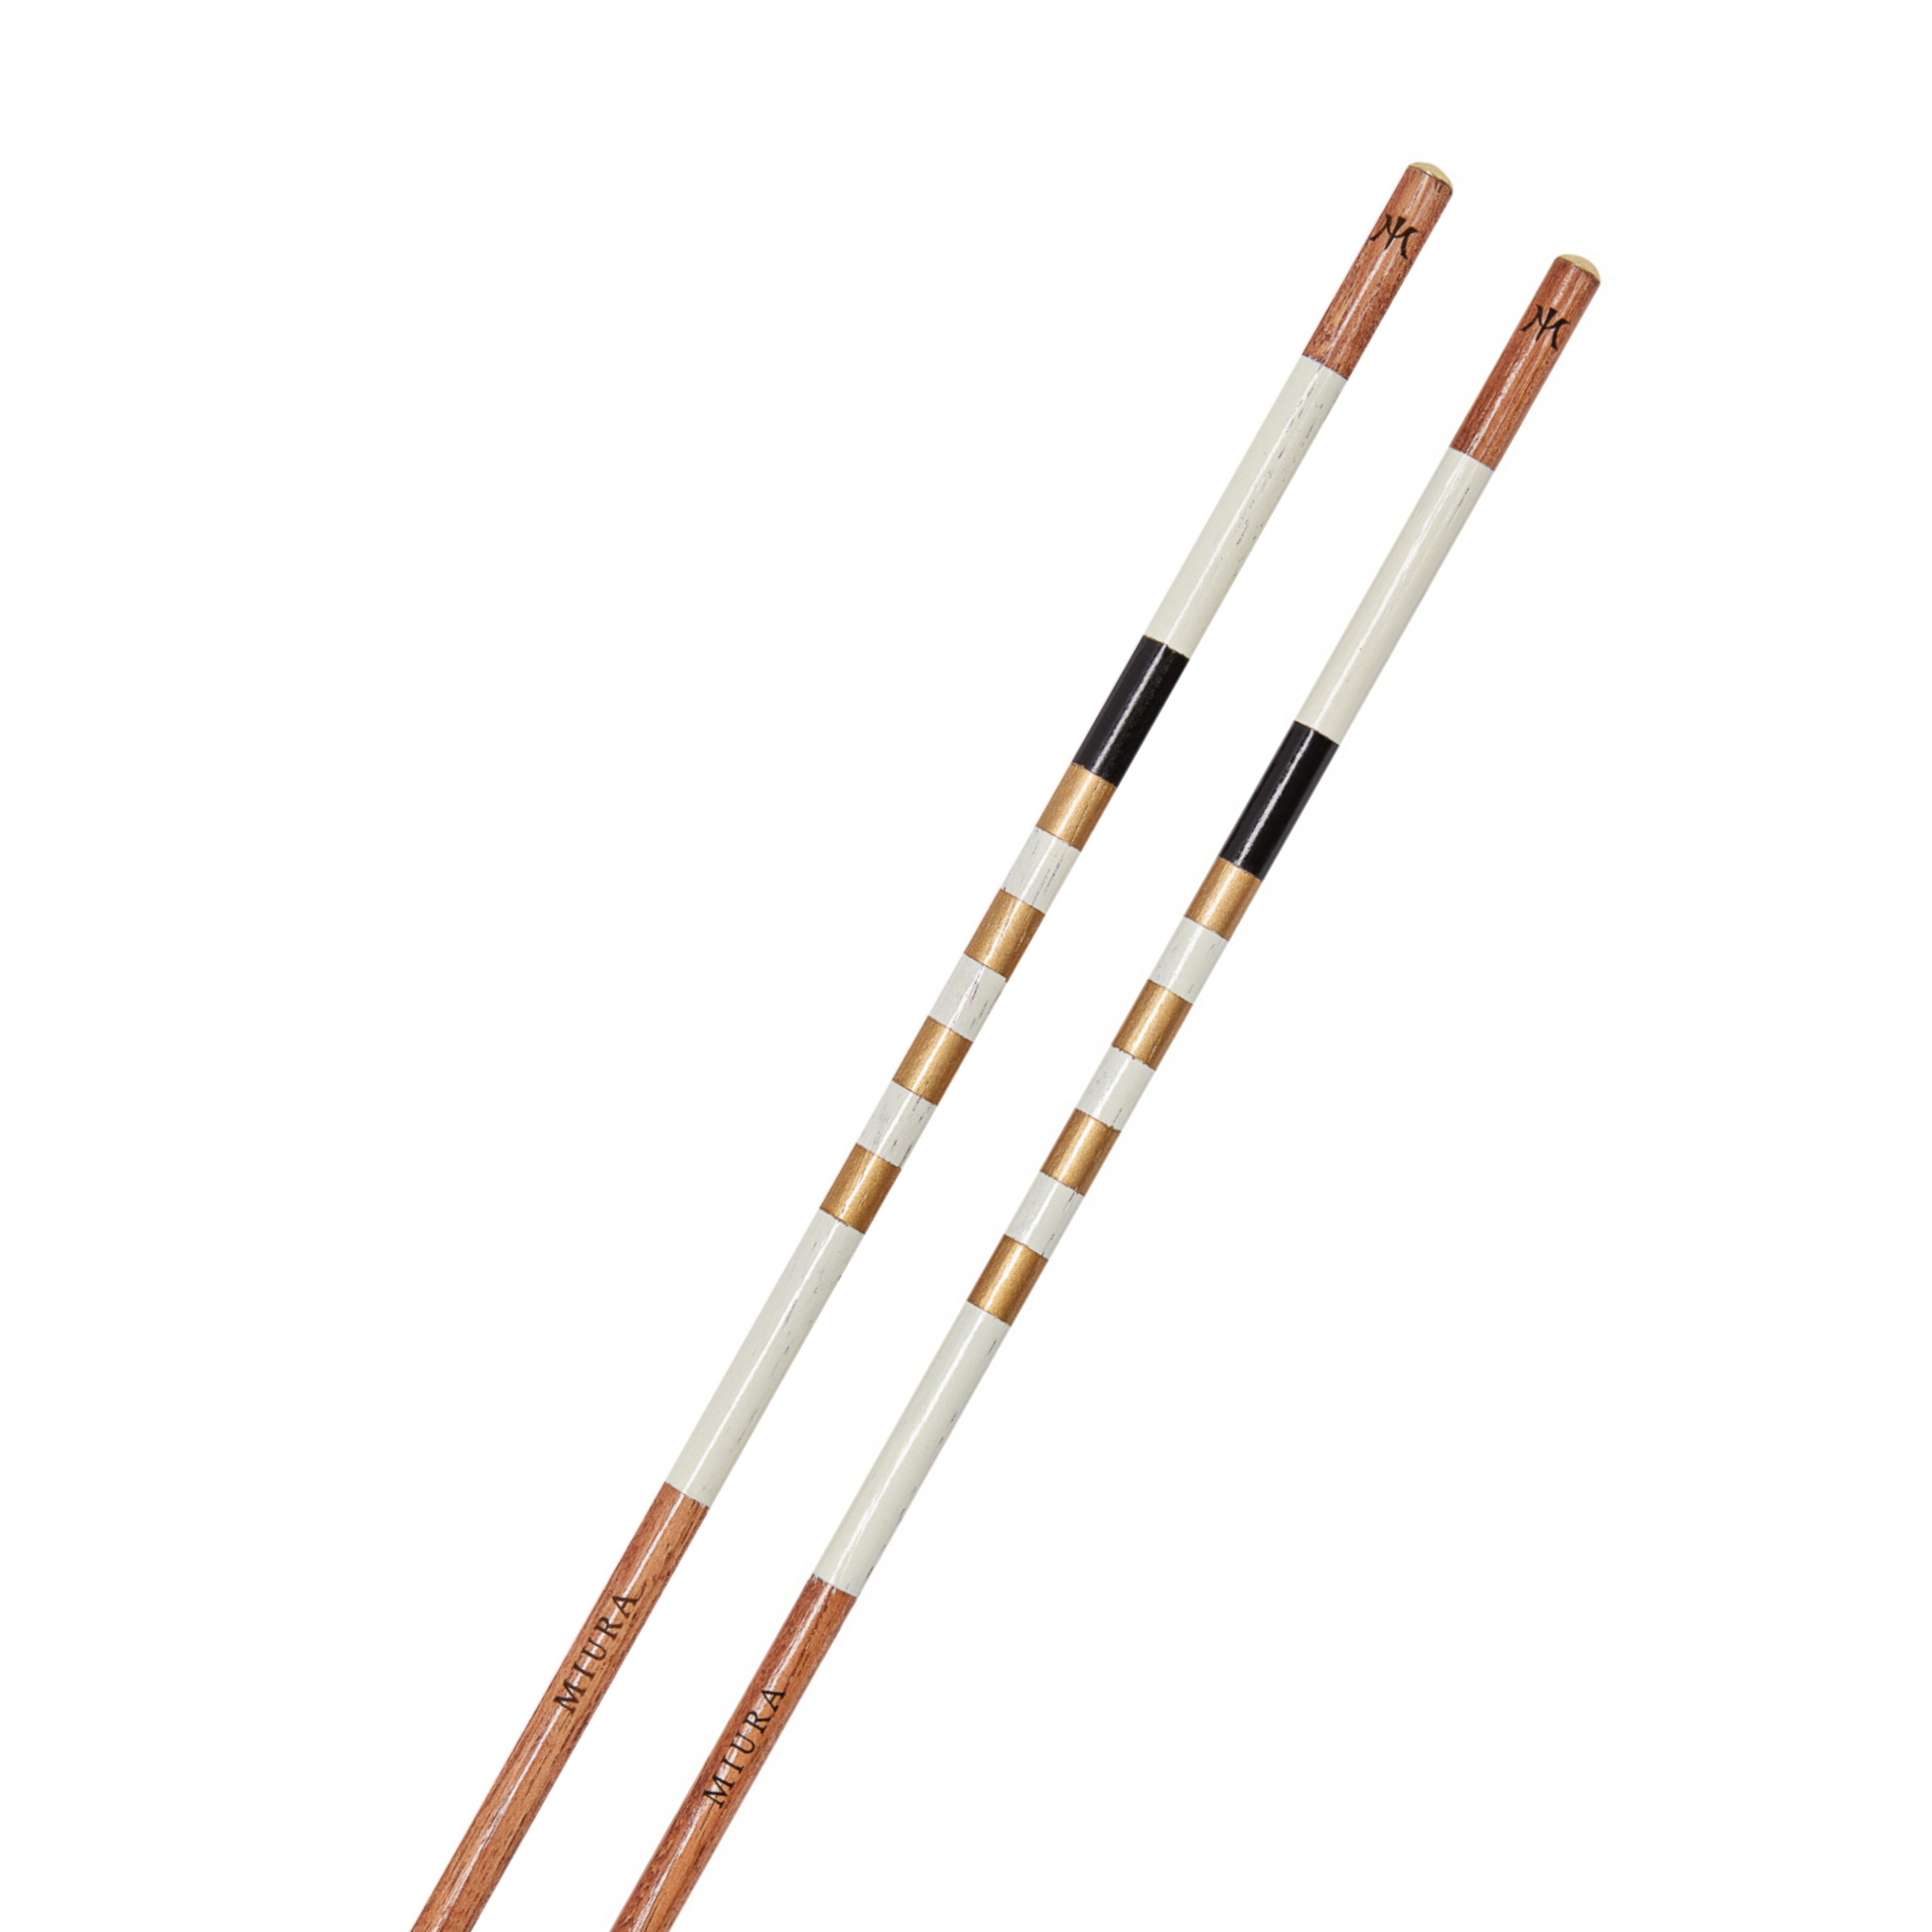 Miura Alignment Sticks